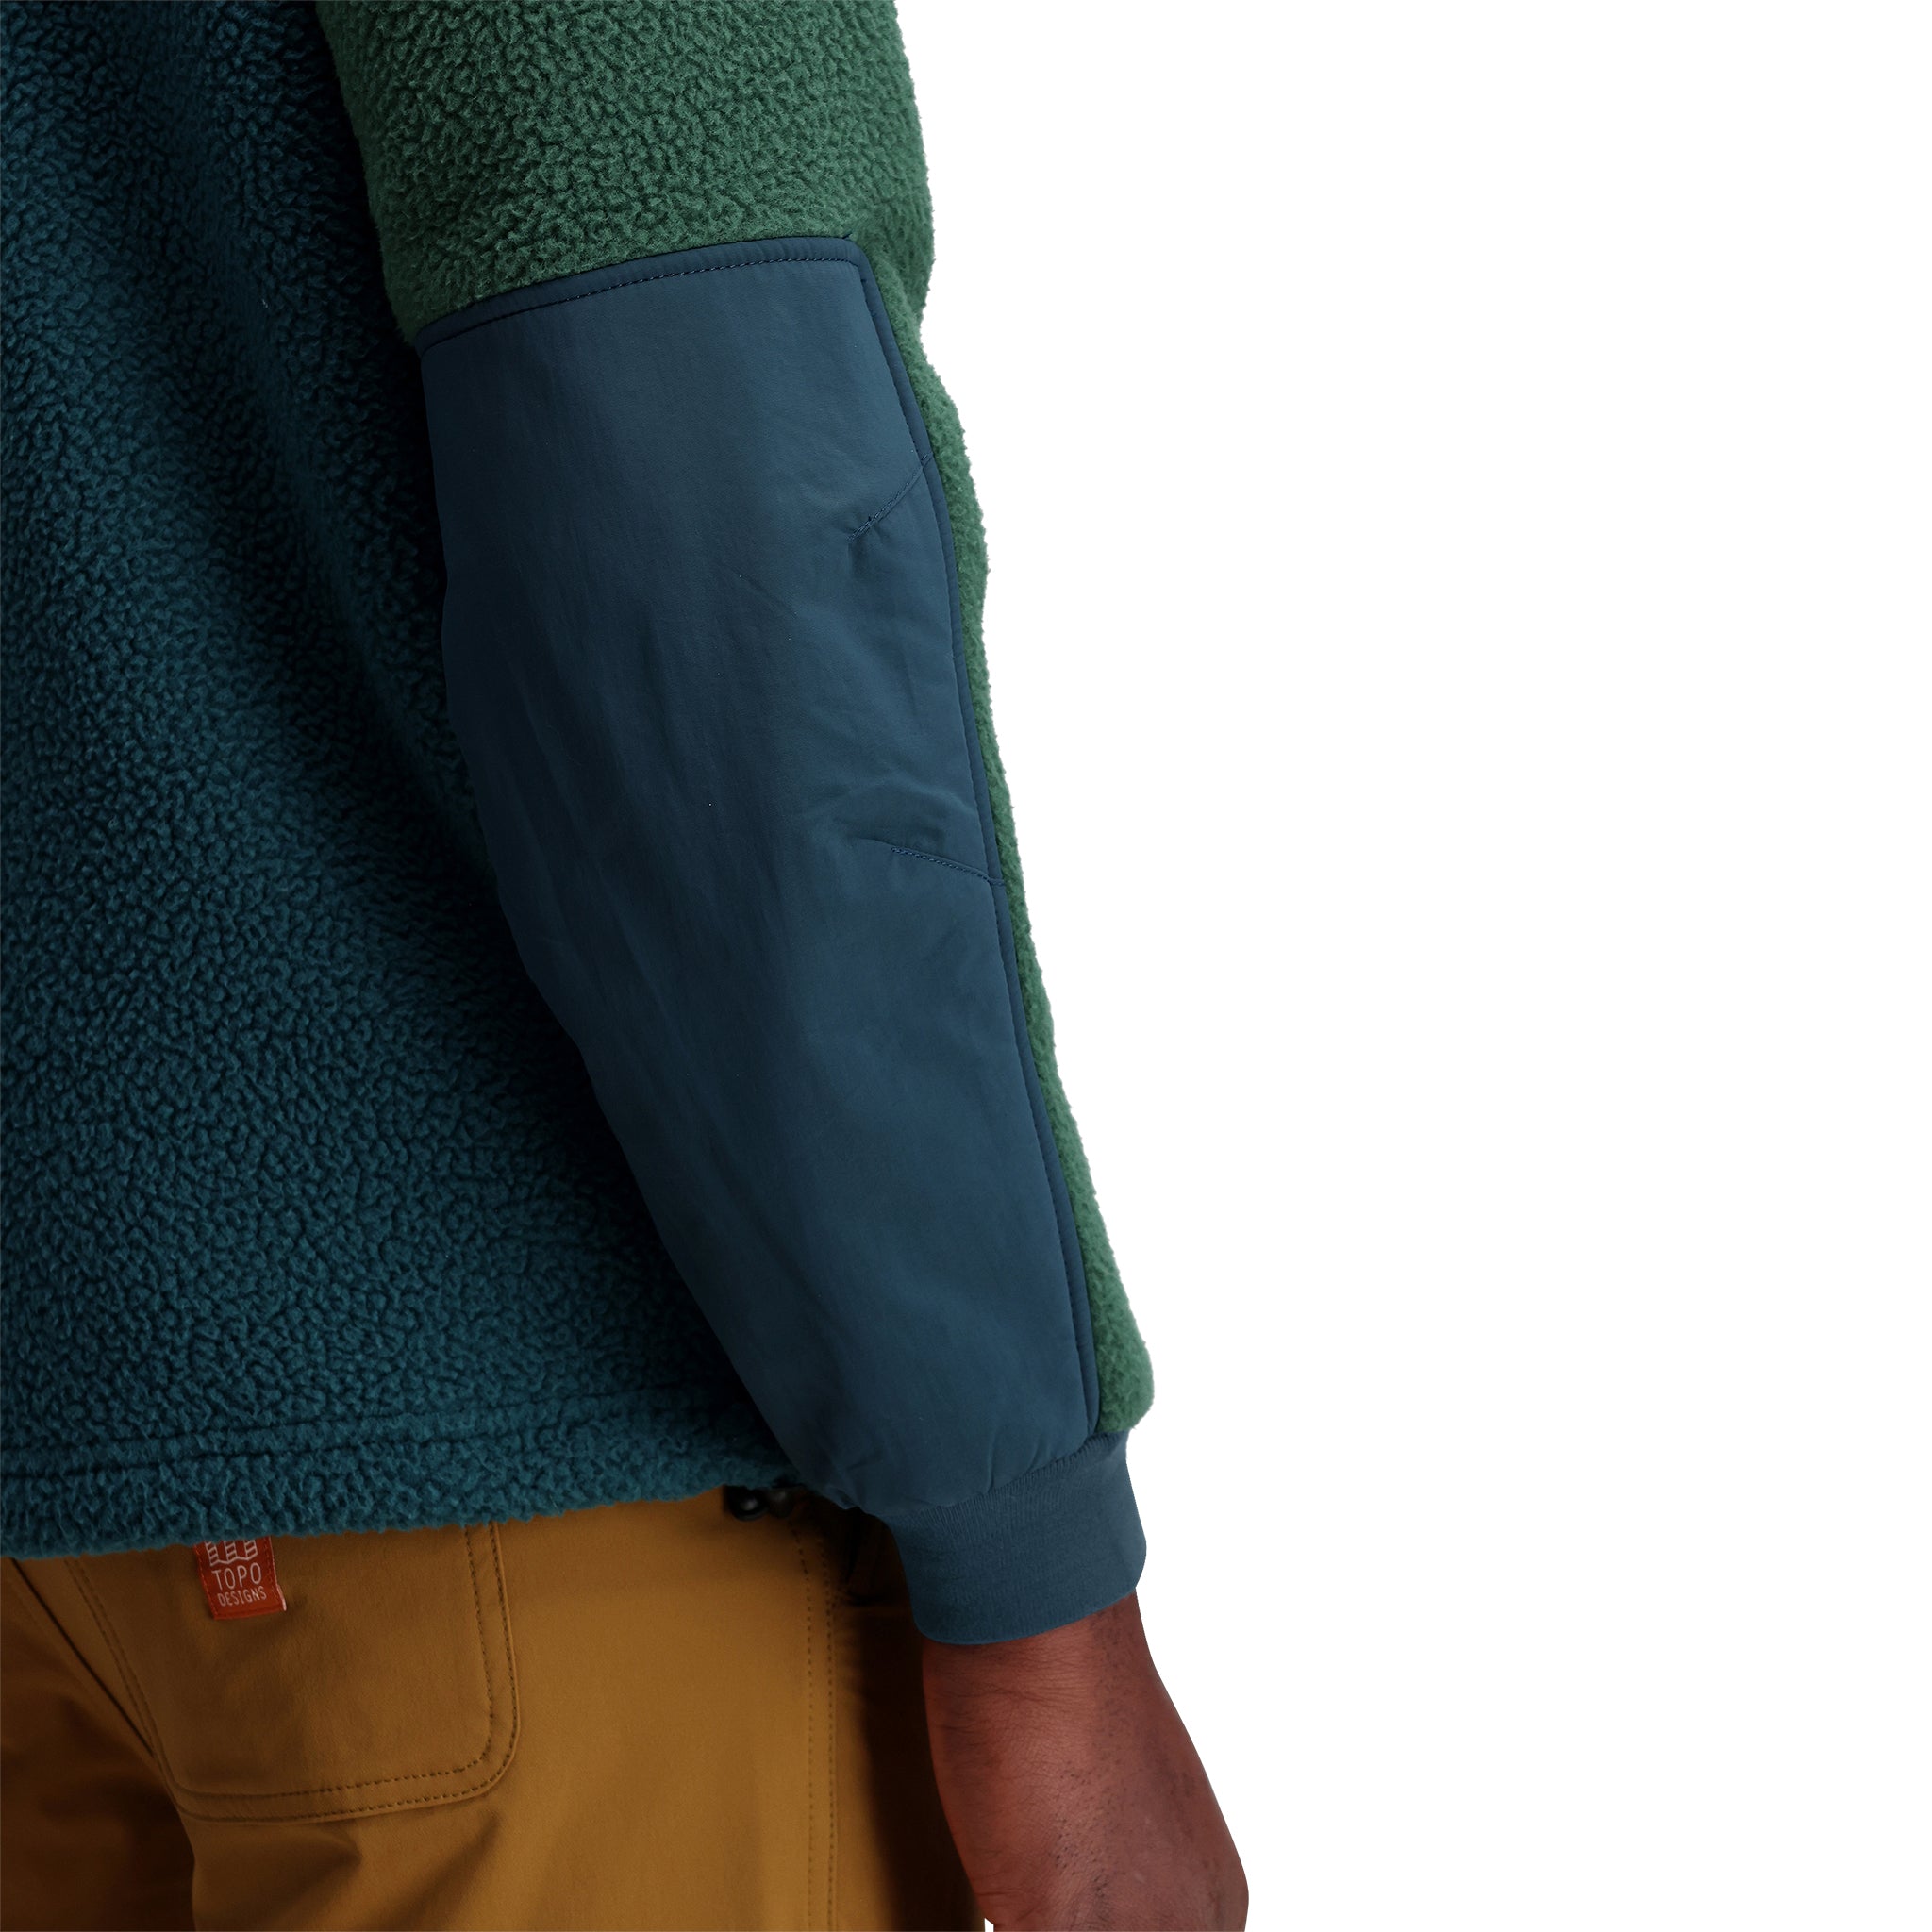 Mountain Fleece Pullover - Men's - Final Sale – Topo Designs